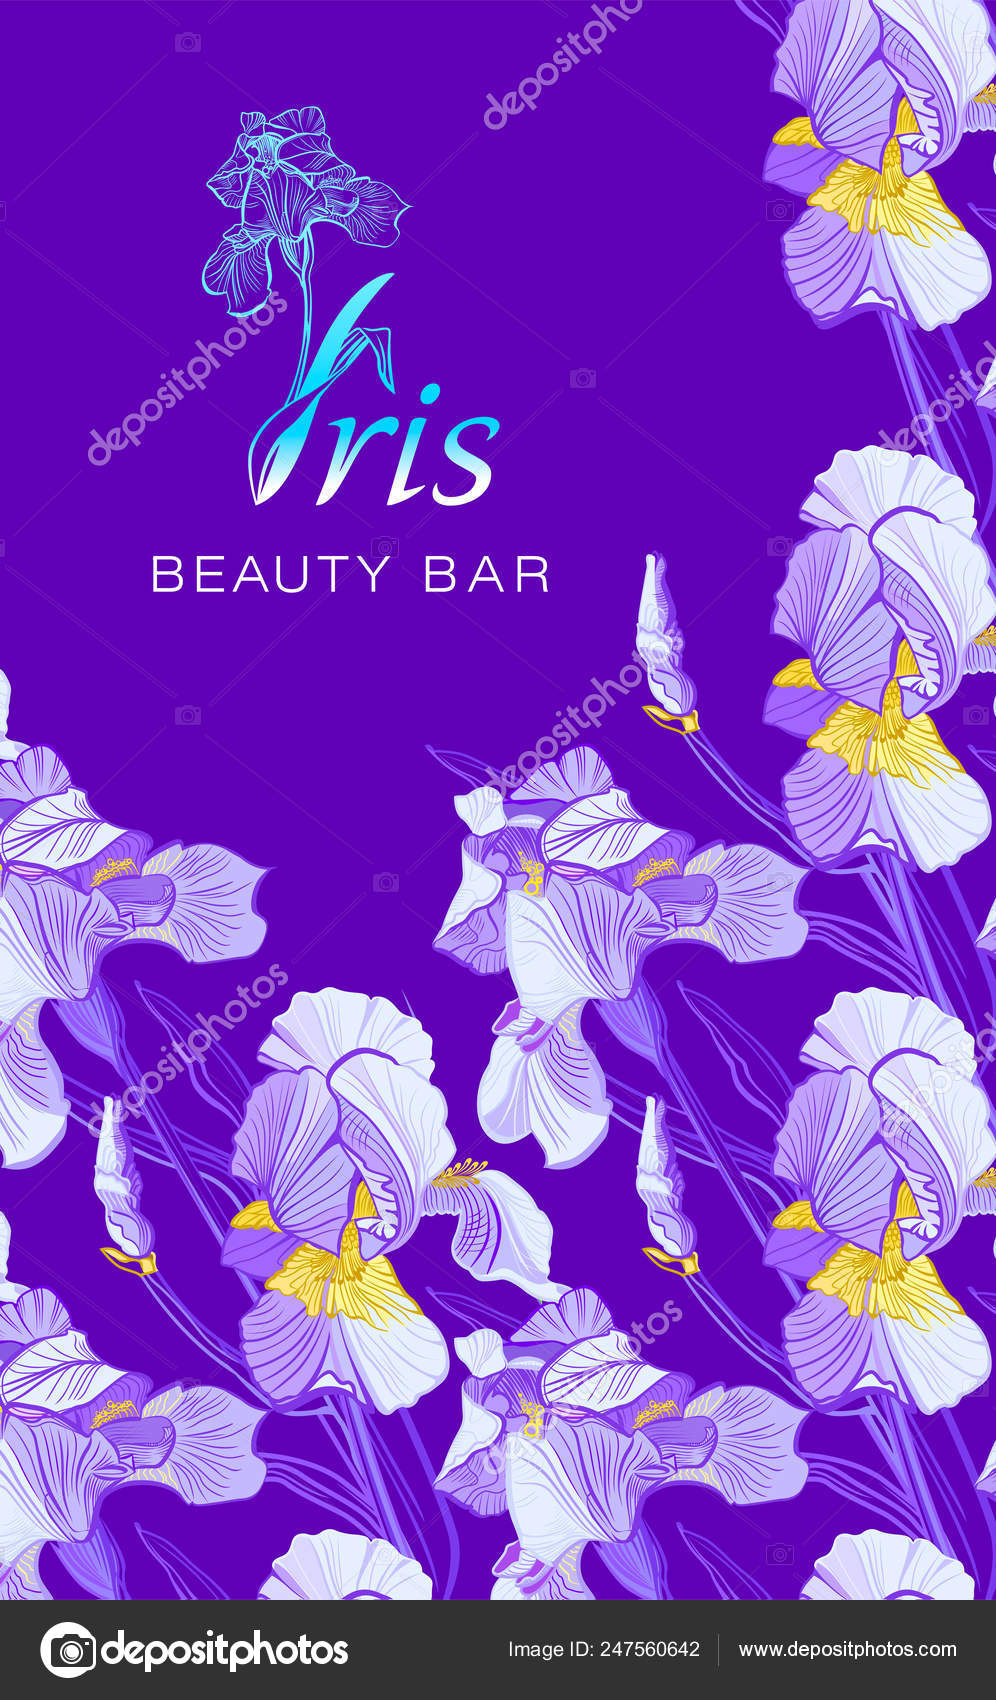 Iris beauty bar